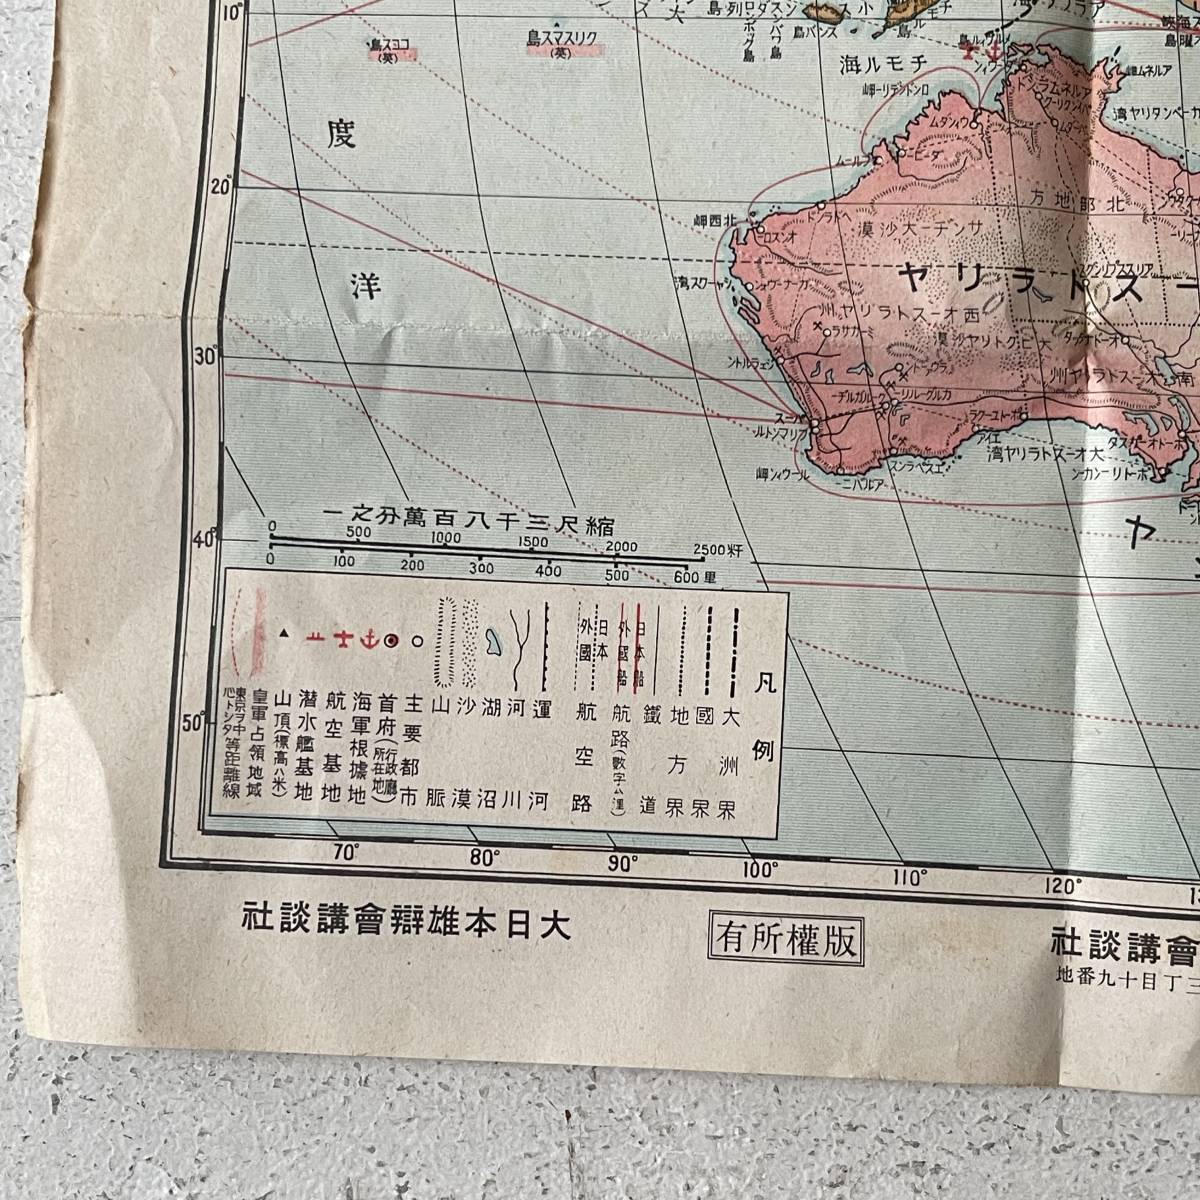 戦前 古地図 A9 キング付録 太平洋戦争地図 昭和17年 講談社 裏面 南洋諸国明細地図の画像7